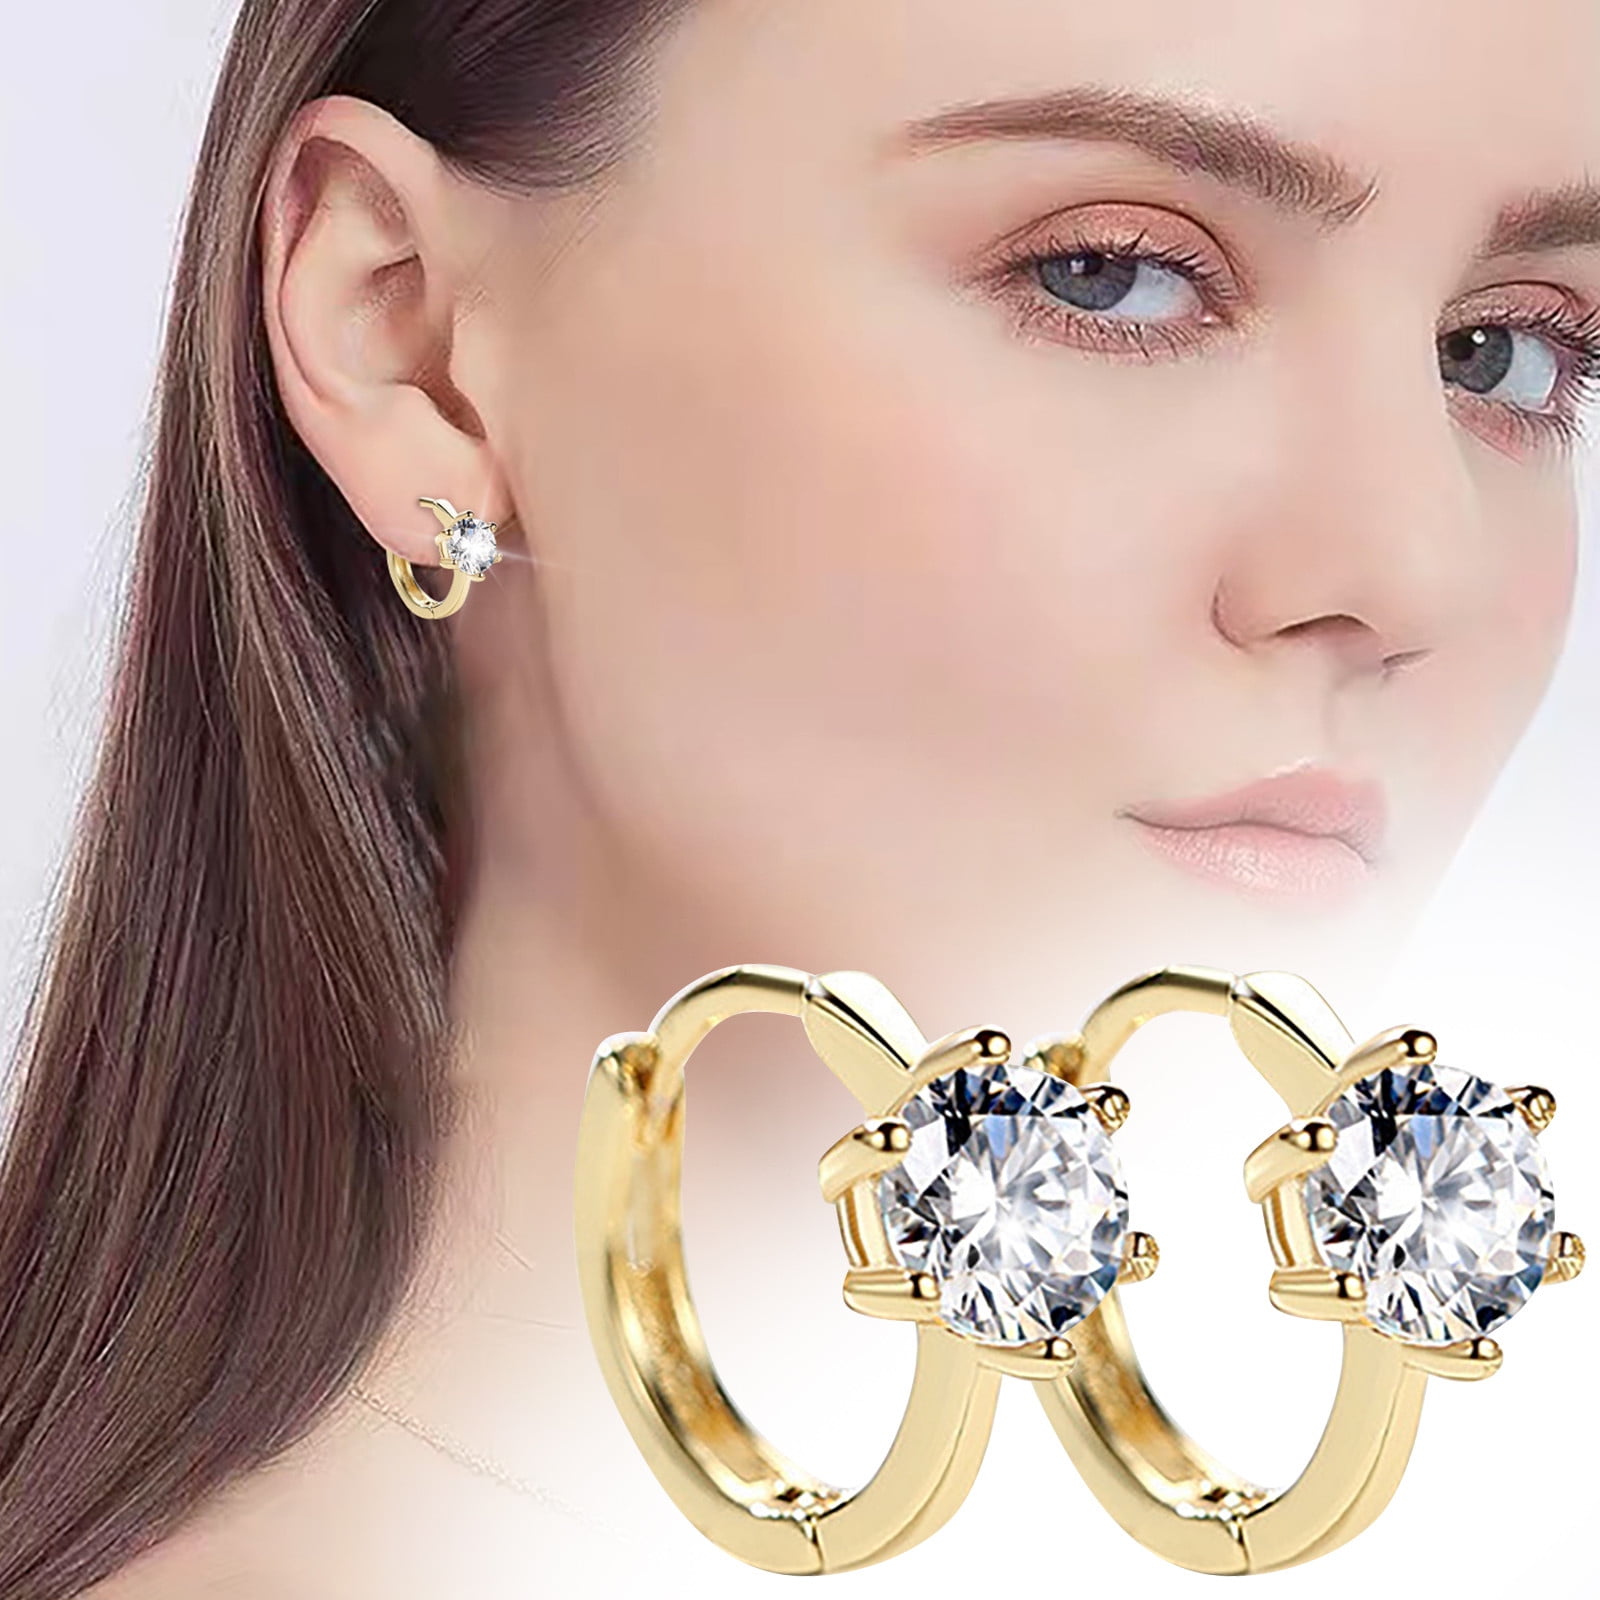 Jewelry Diamond Six Prong Earrings For Teen Girls Minimalist Piercing Studs Trendy Earrings f8c142d2 9ff8 468b b32d d841c67fe9d0.692196bcf07e849036a581bc4c37e6dc